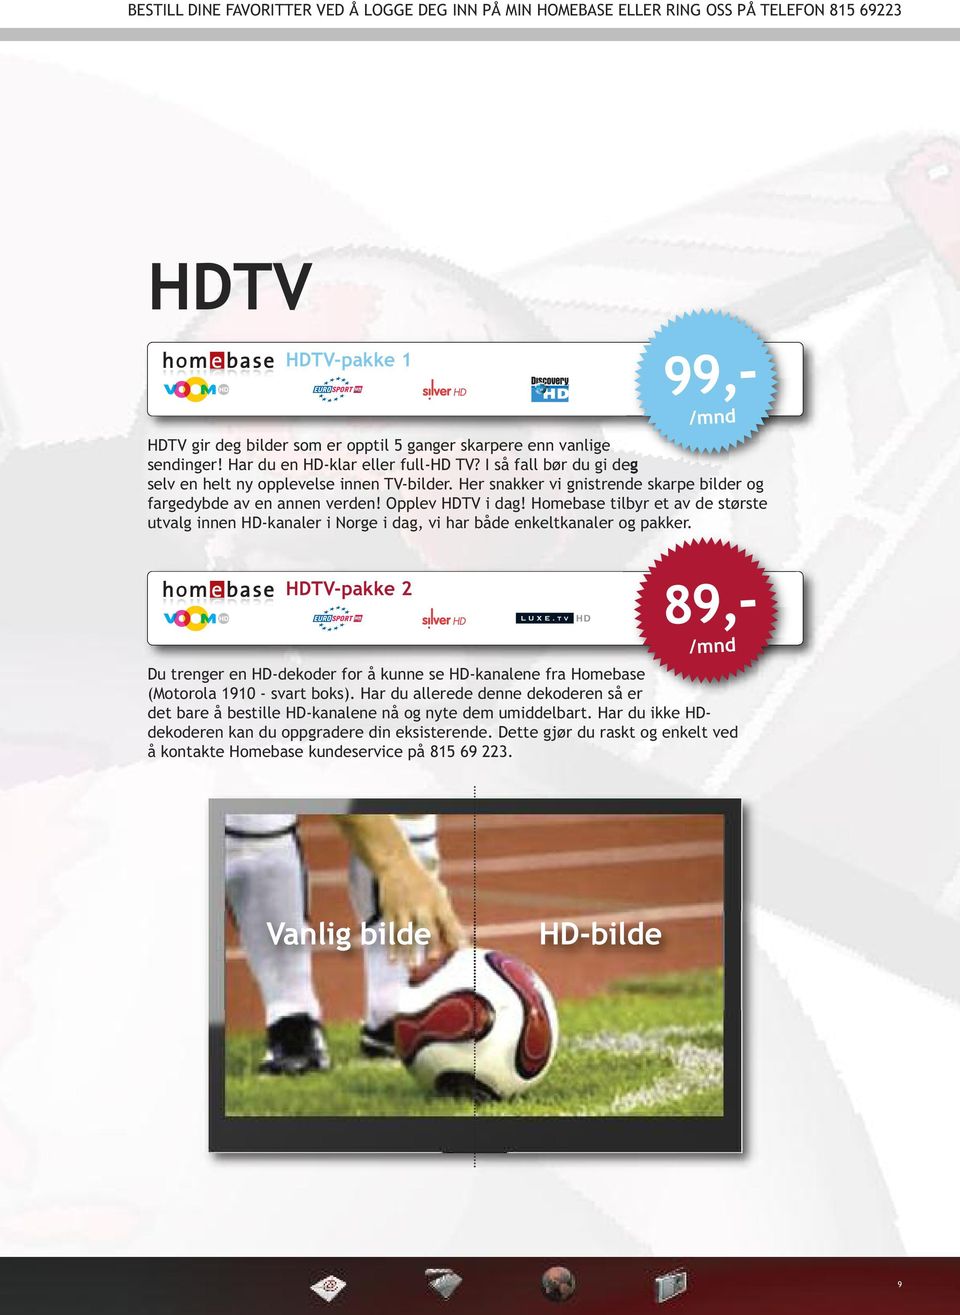 Homebase tilbyr et av de største utvalg innen HD-kanaler i Norge i dag, vi har både enkeltkanaler og pakker.